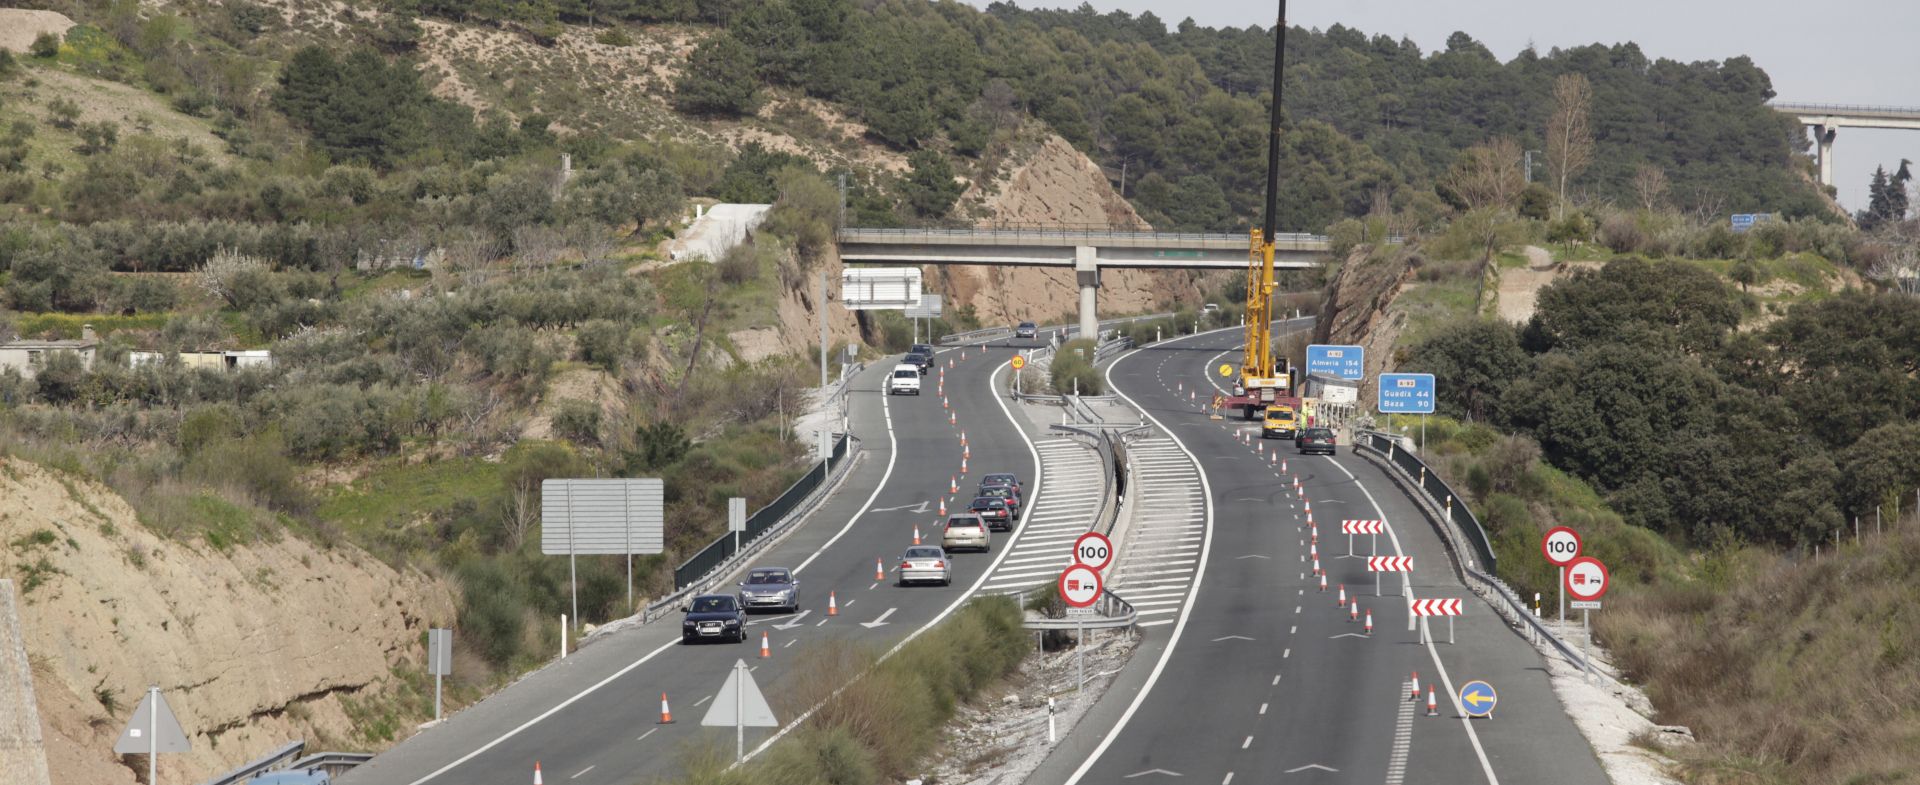 obras carretera A 3 fuente DGT restricciones circulacion camiones